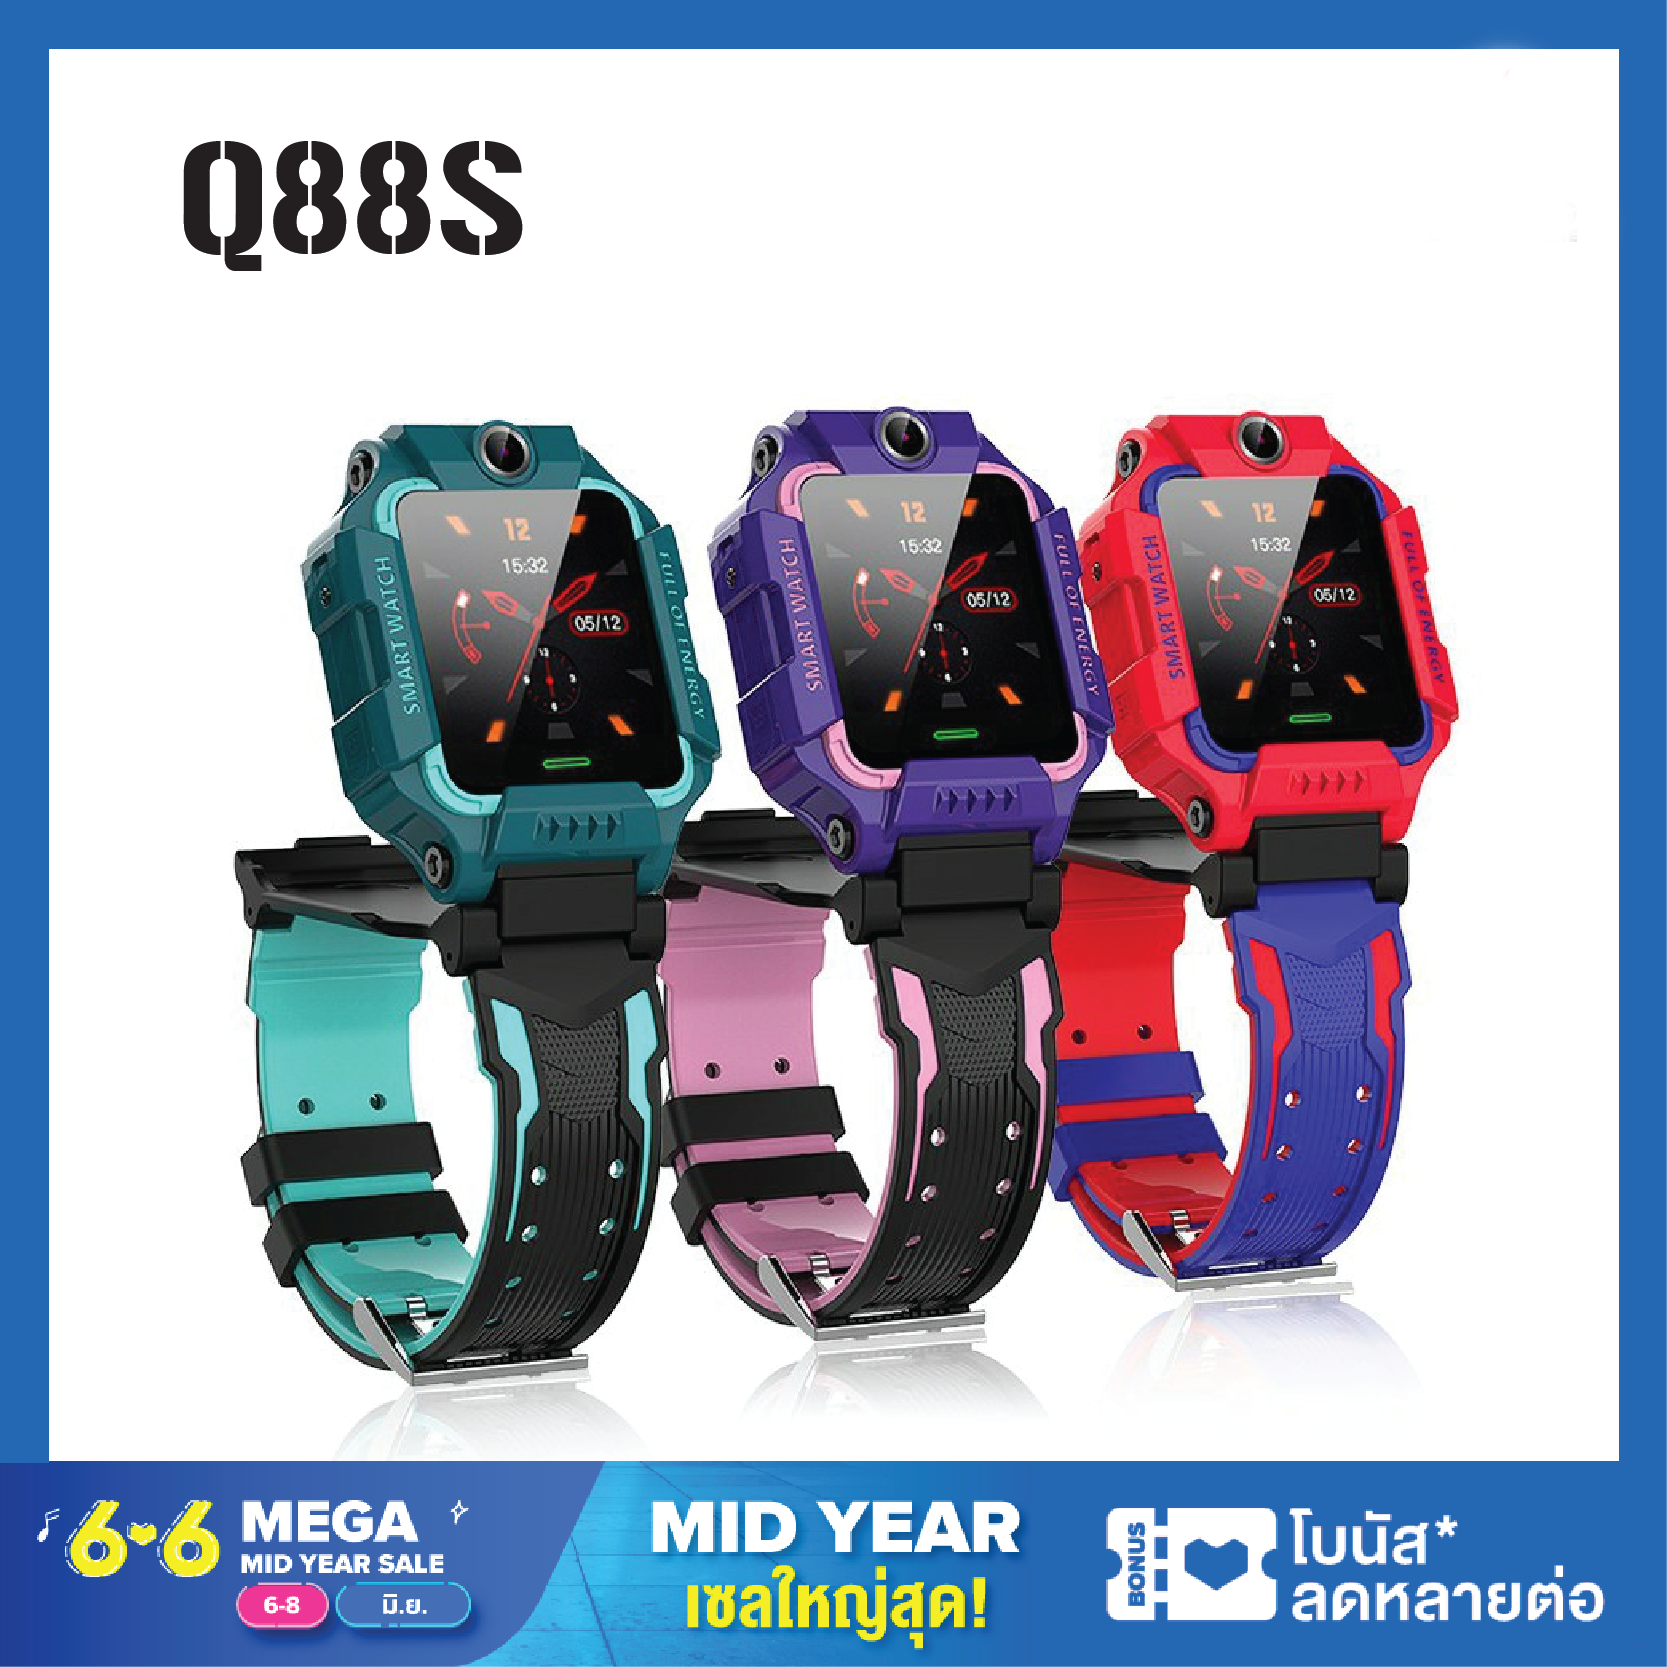 Smart Watch Q88 [สินค้าส่งจากไทย] นาฬิกา นาฬิกาเด็ก สมาร์ทวอทช์สำหรับเด็ก นาฬิกาข้อมือสมาร์ทวอทช์ นาฬิกาอัจริยะ เด็กผู้หญิง เด็กผู้ชาย หน้าจอสัมผัส SOS โทรศัพท์ กันน้ำ Q19 Q12d นาฬิกา สมาทวอช z6z5 ไอโม่ imoรุ่นใหม่ นาฬิกาเด็ก [พร้อมรับประกันสินค้า!]